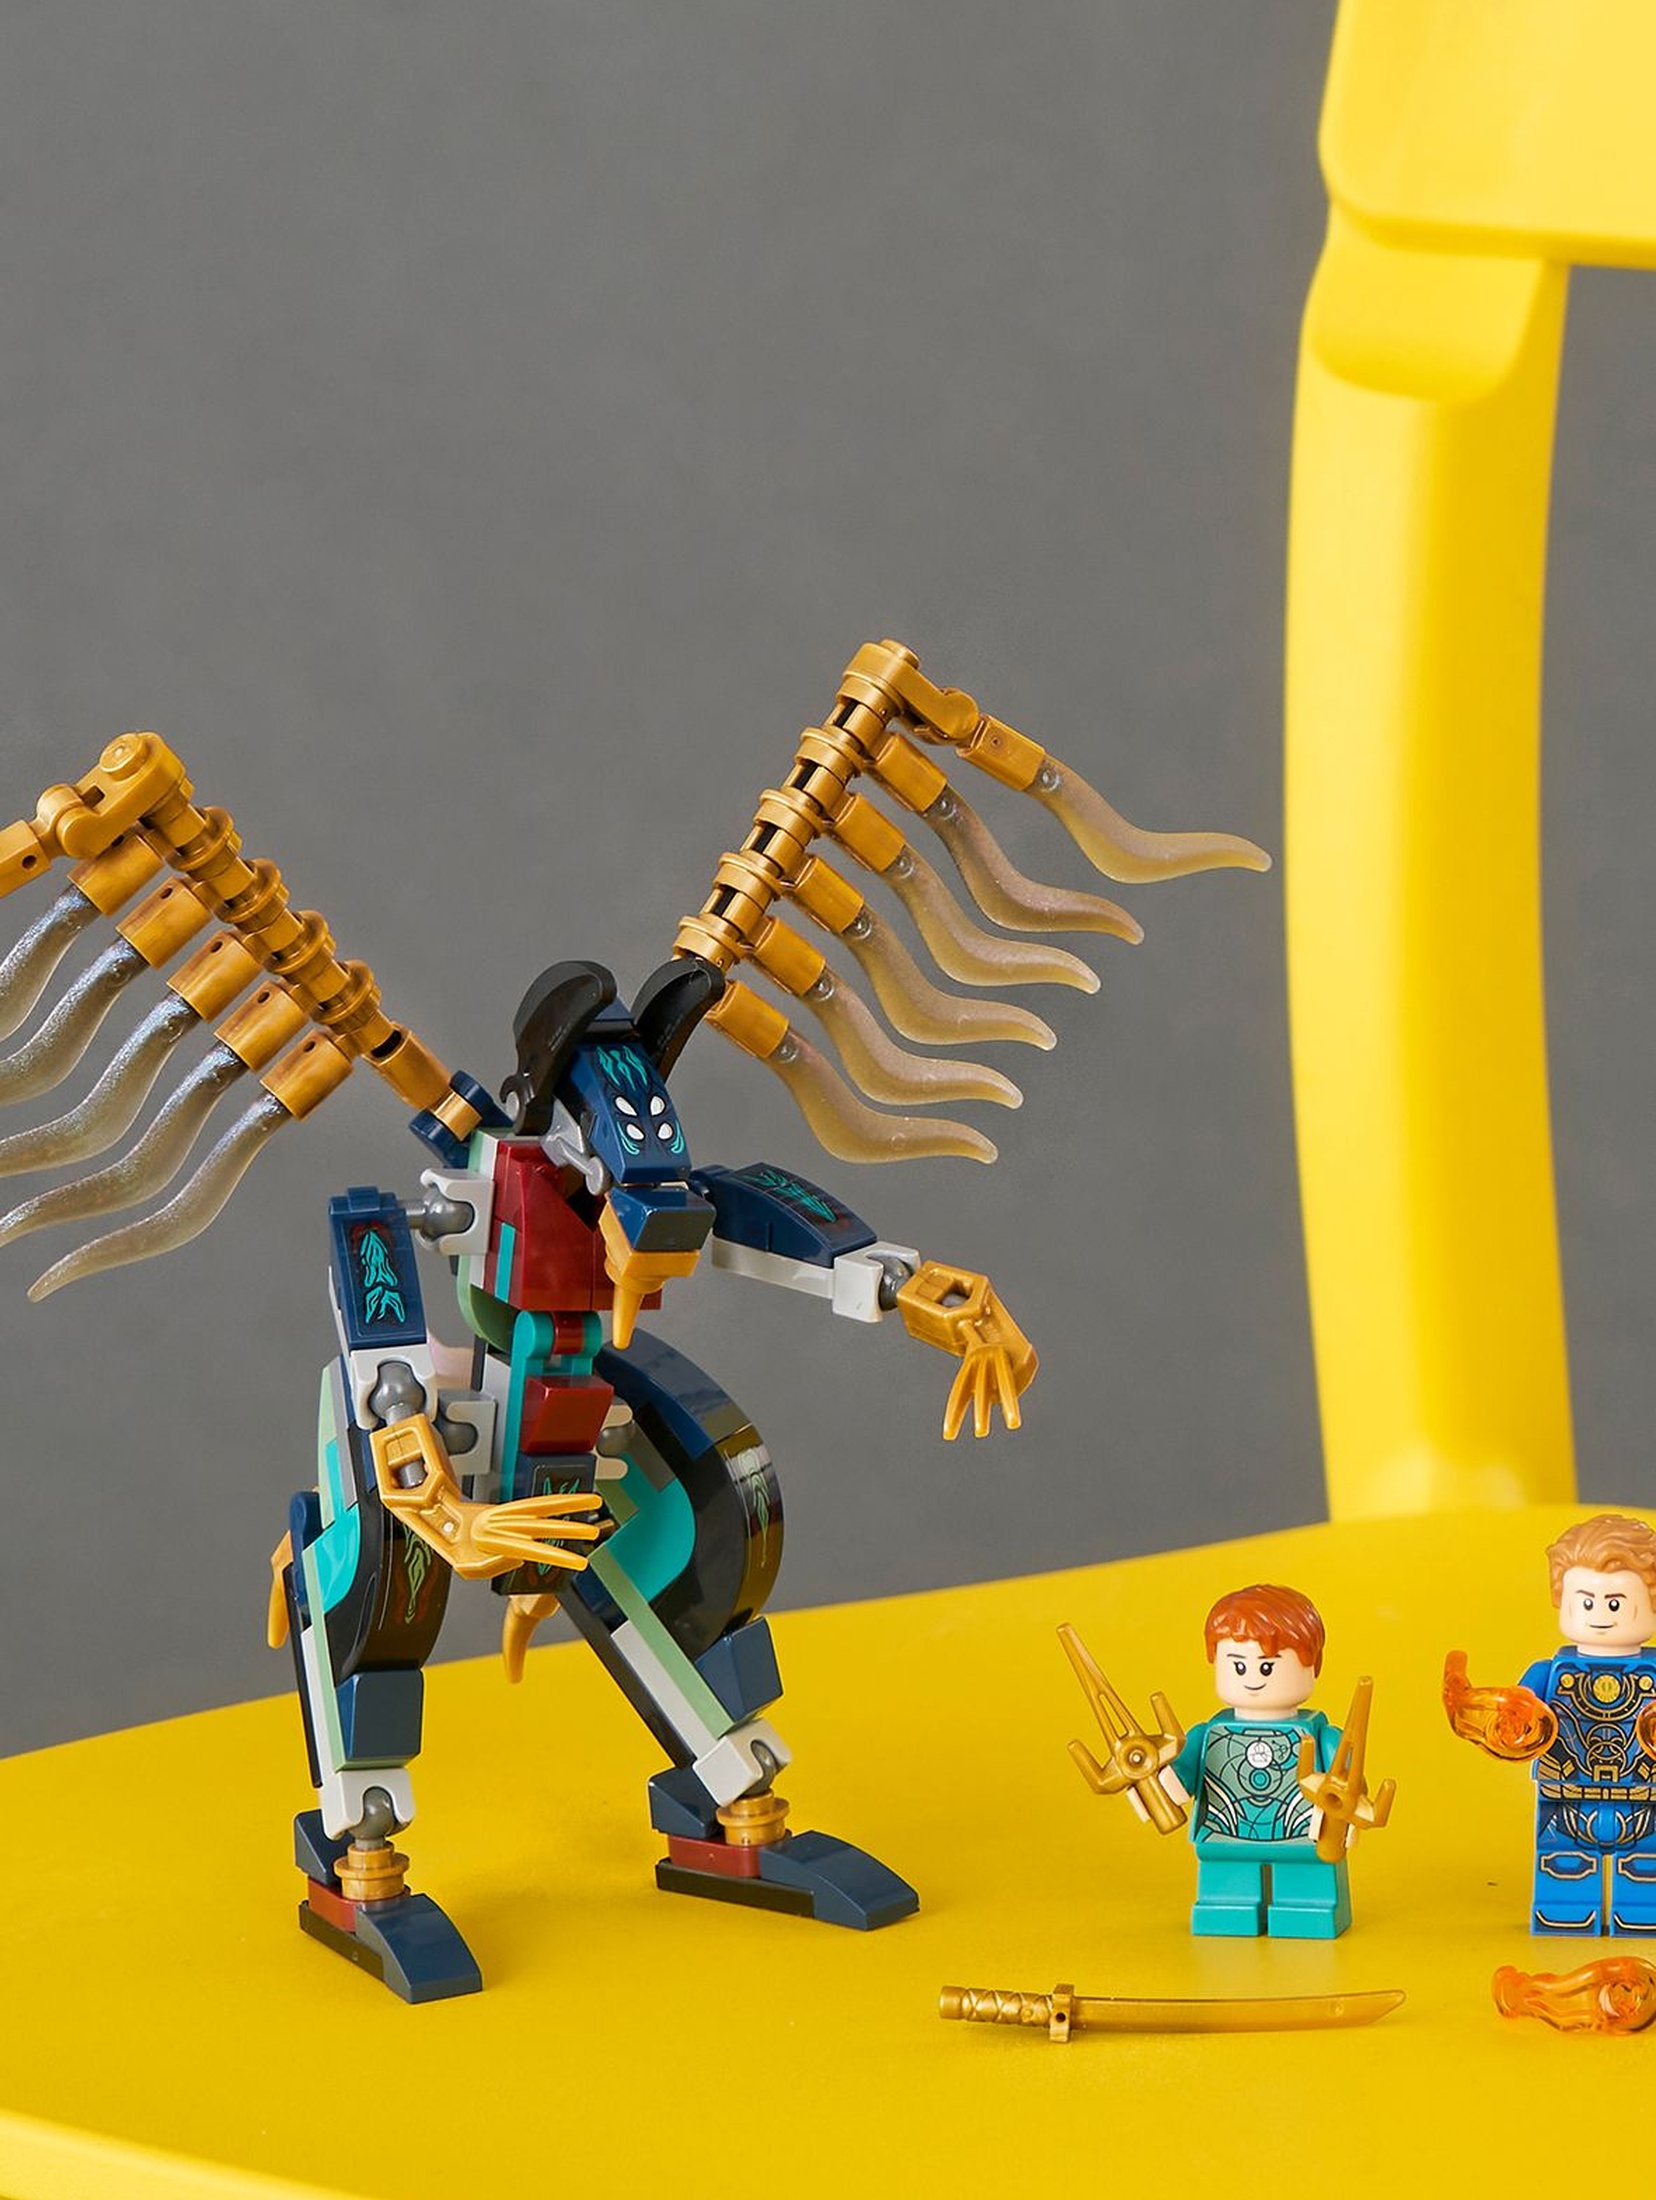 LEGO® Klocki Super Heroes 76145 Eternals - Atak powietrzny